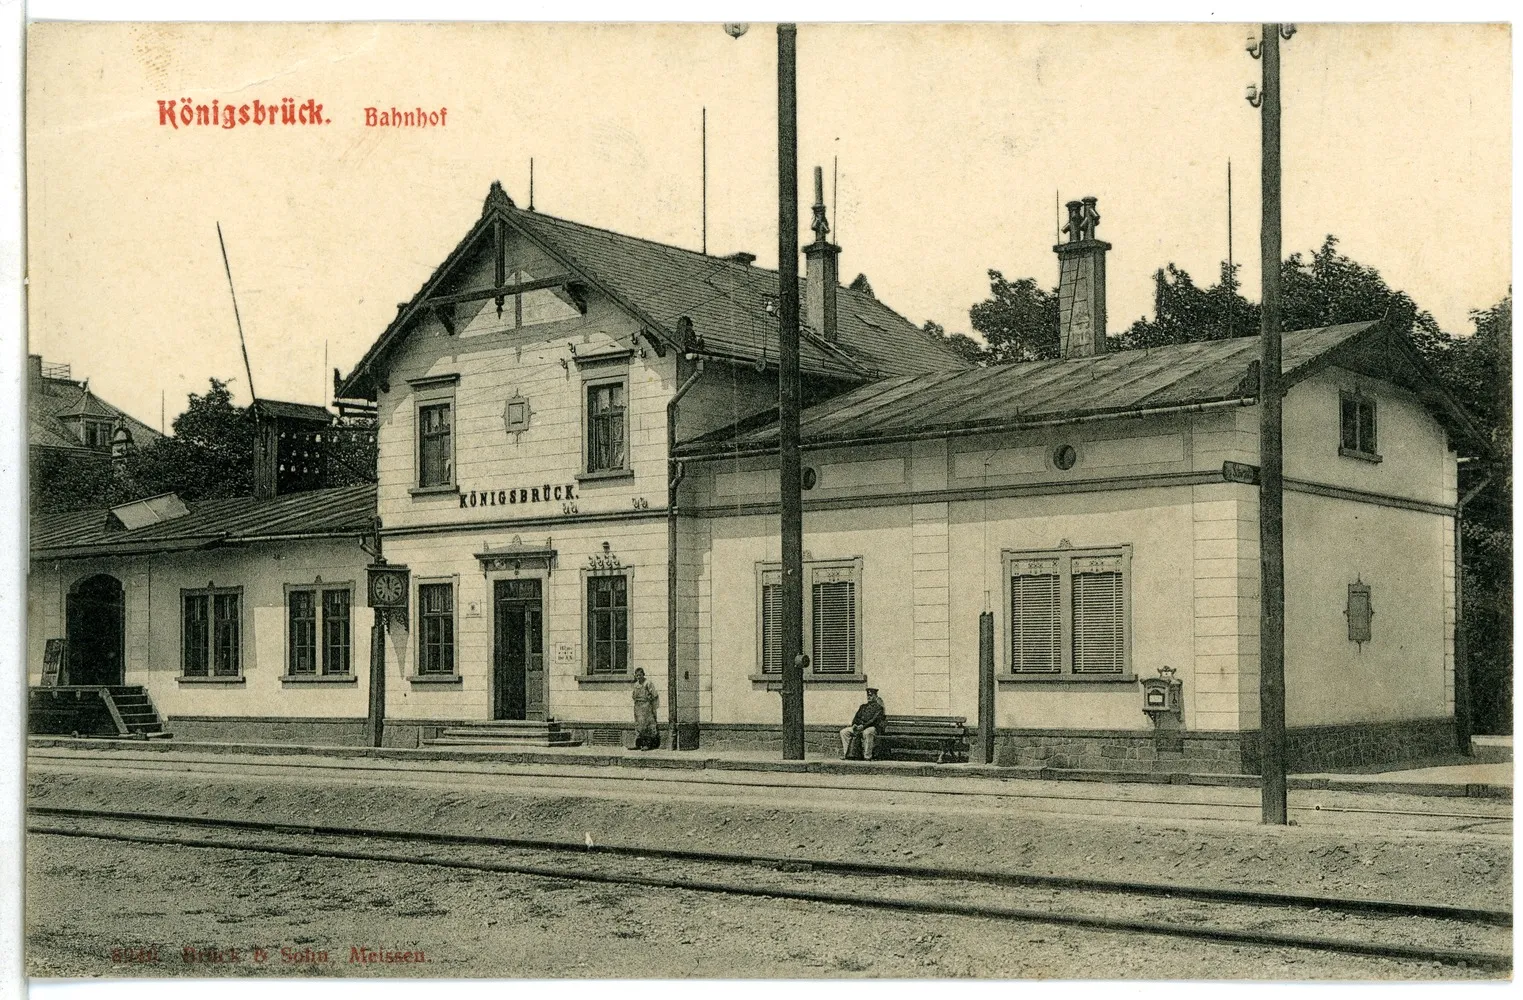 Photo showing: Königsbrück; Bahnhof